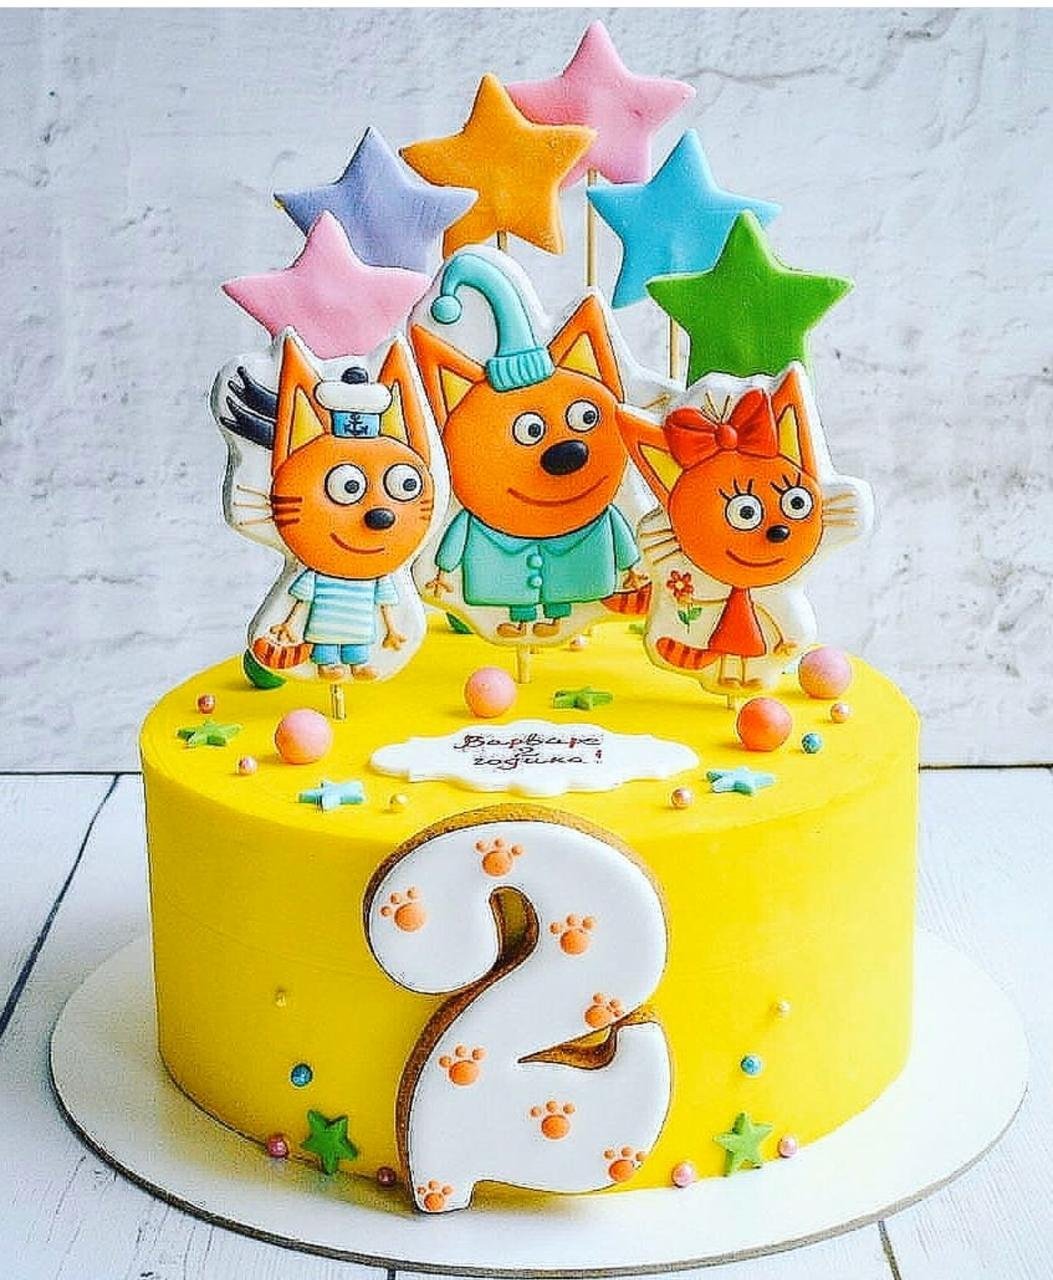 Картинка на торт три кота с днем рождения